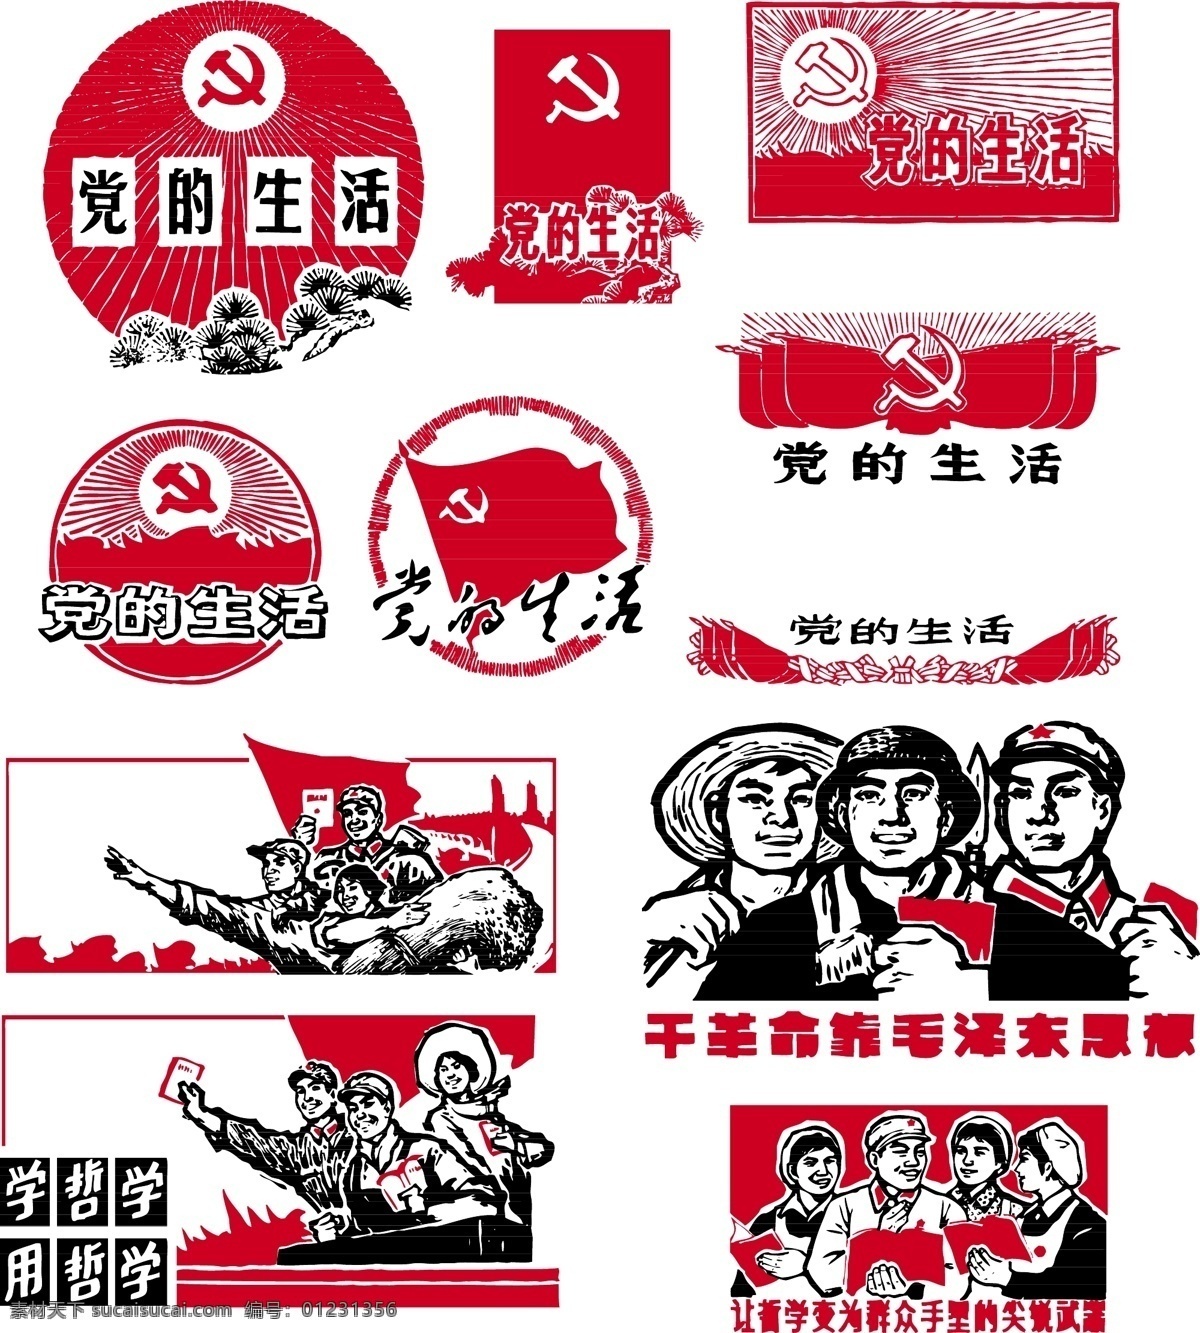 文革 时期 红卫兵 70年代 标识标志图标 革命 红色 矢量图库 小图标 矢量 图 全集 文化革命 矢量系列 其他矢量图